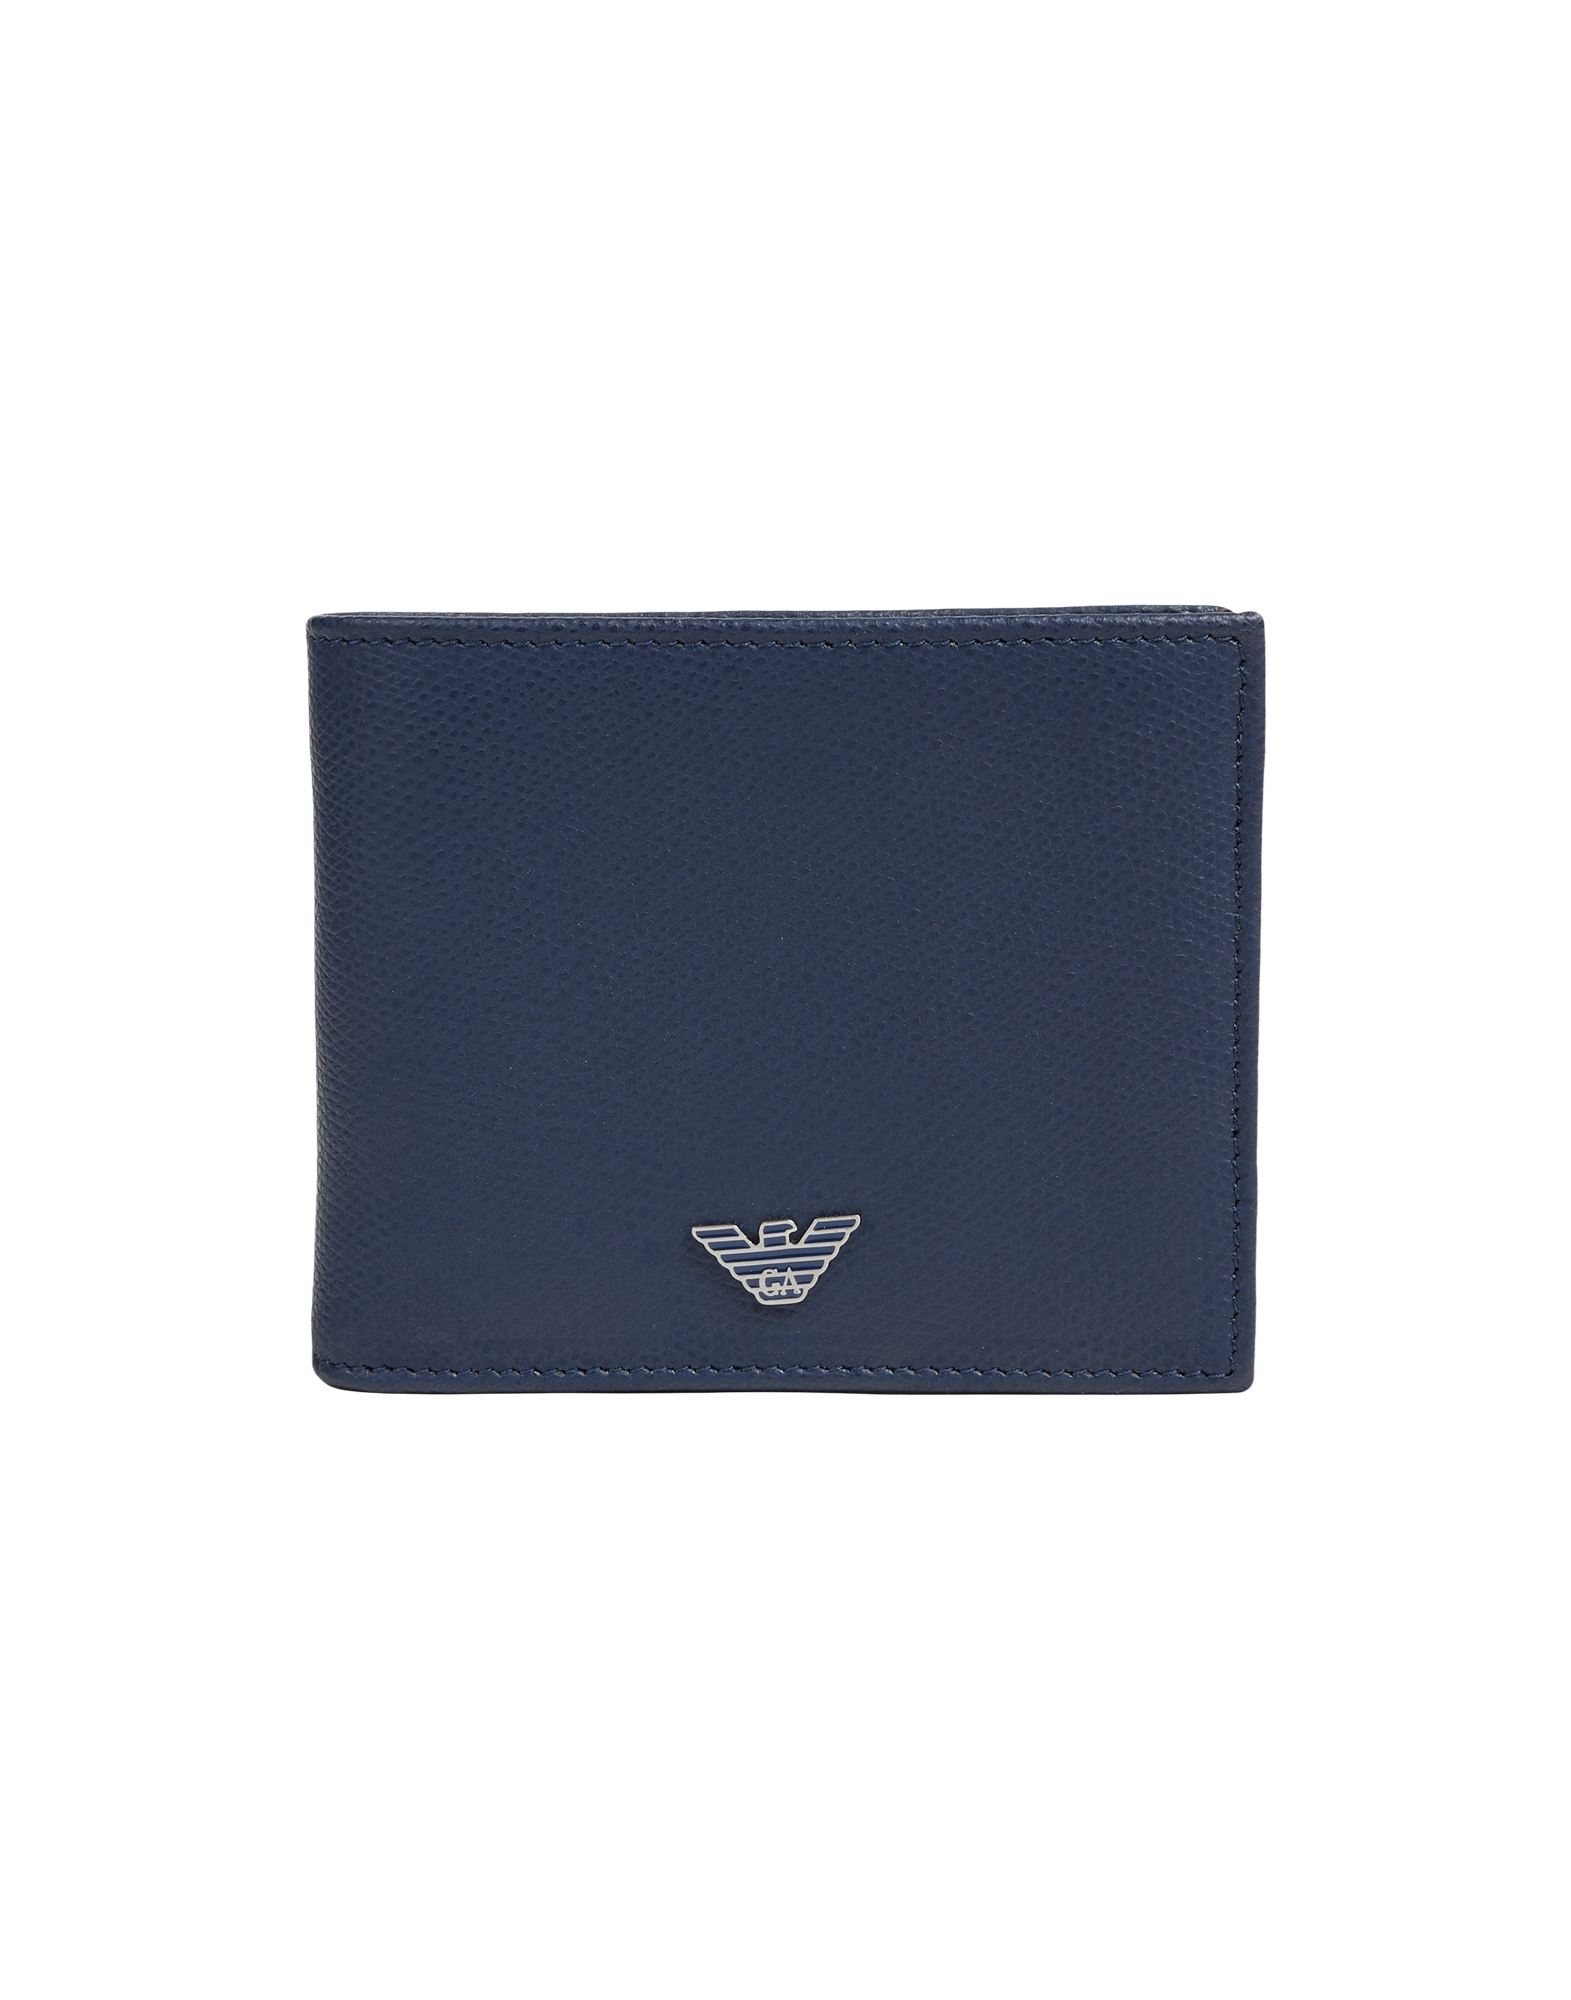 Emporio Armani Wallets In Navy Blue